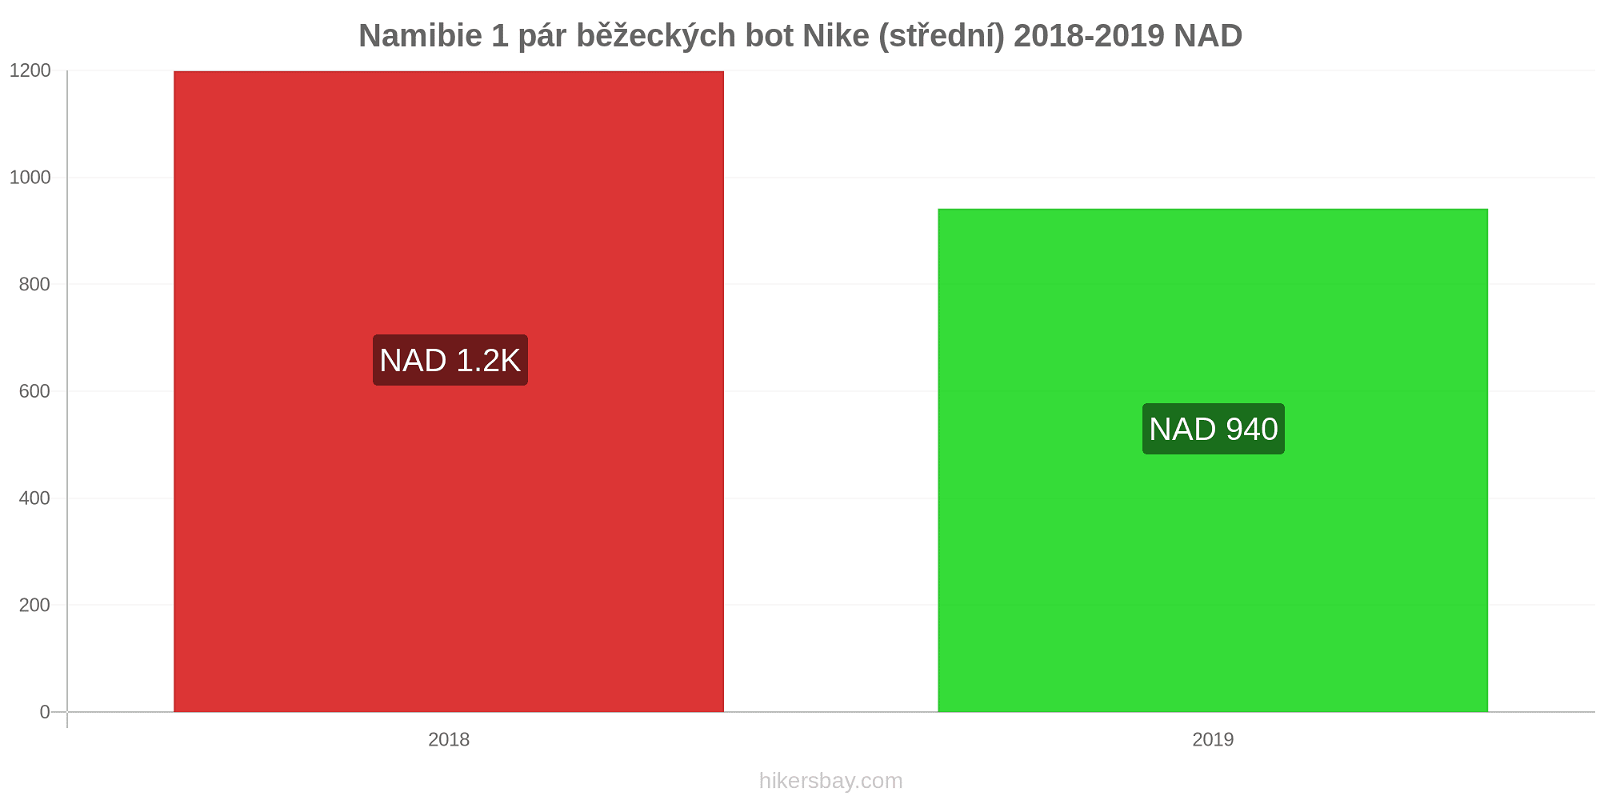 Namibie změny cen 1 pár běžeckých bot Nike (střední) hikersbay.com